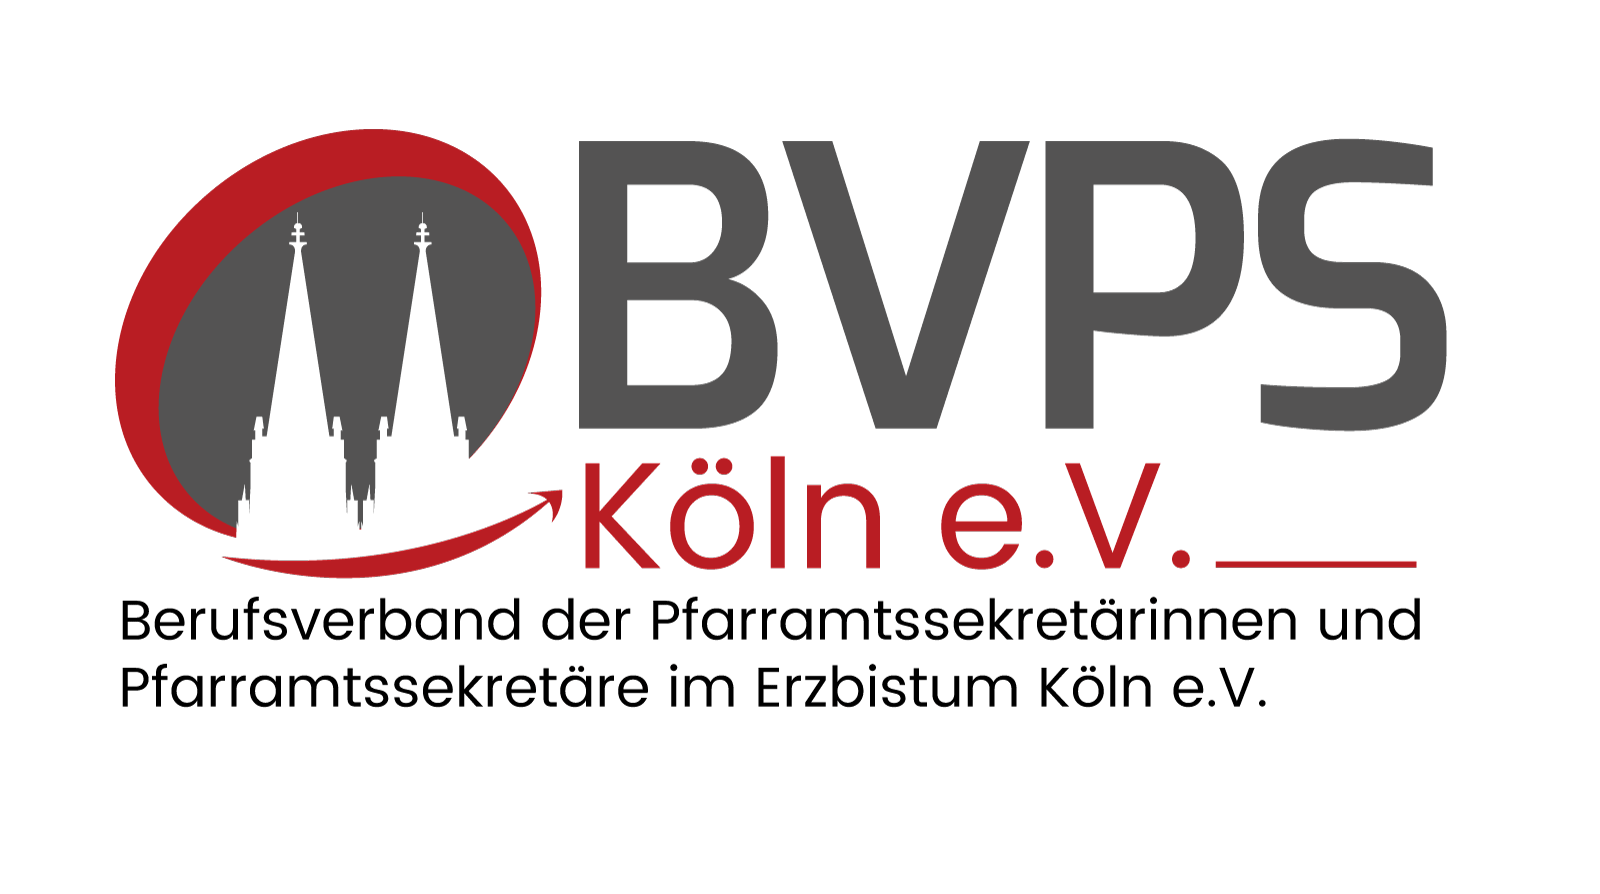 BVPS-LOGO